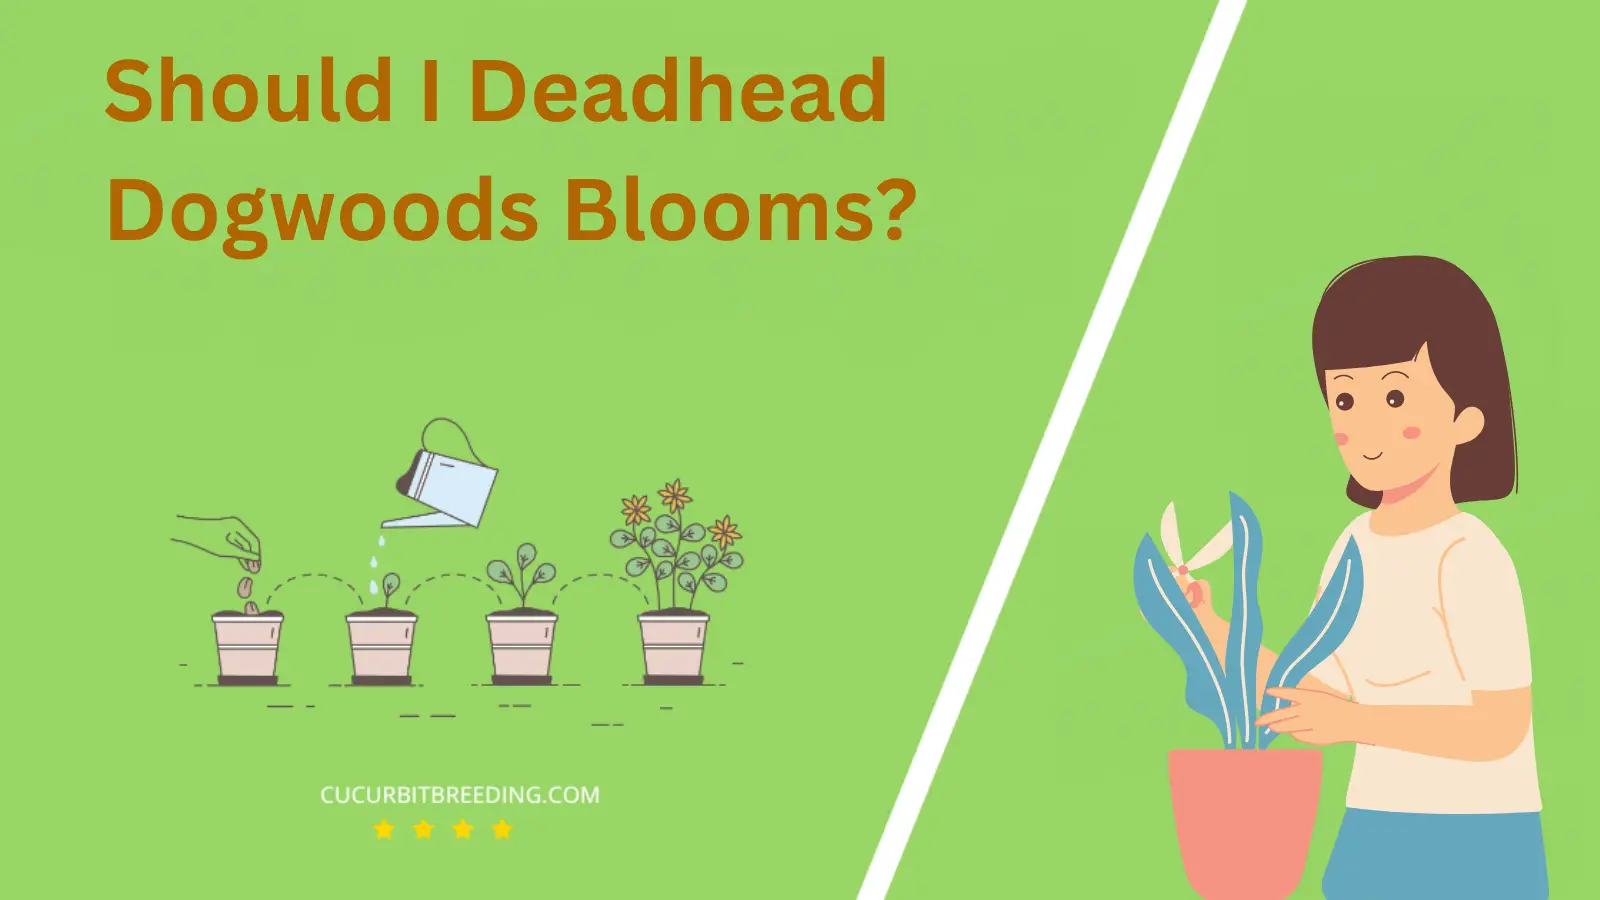 Should I Deadhead Dogwoods Blooms?